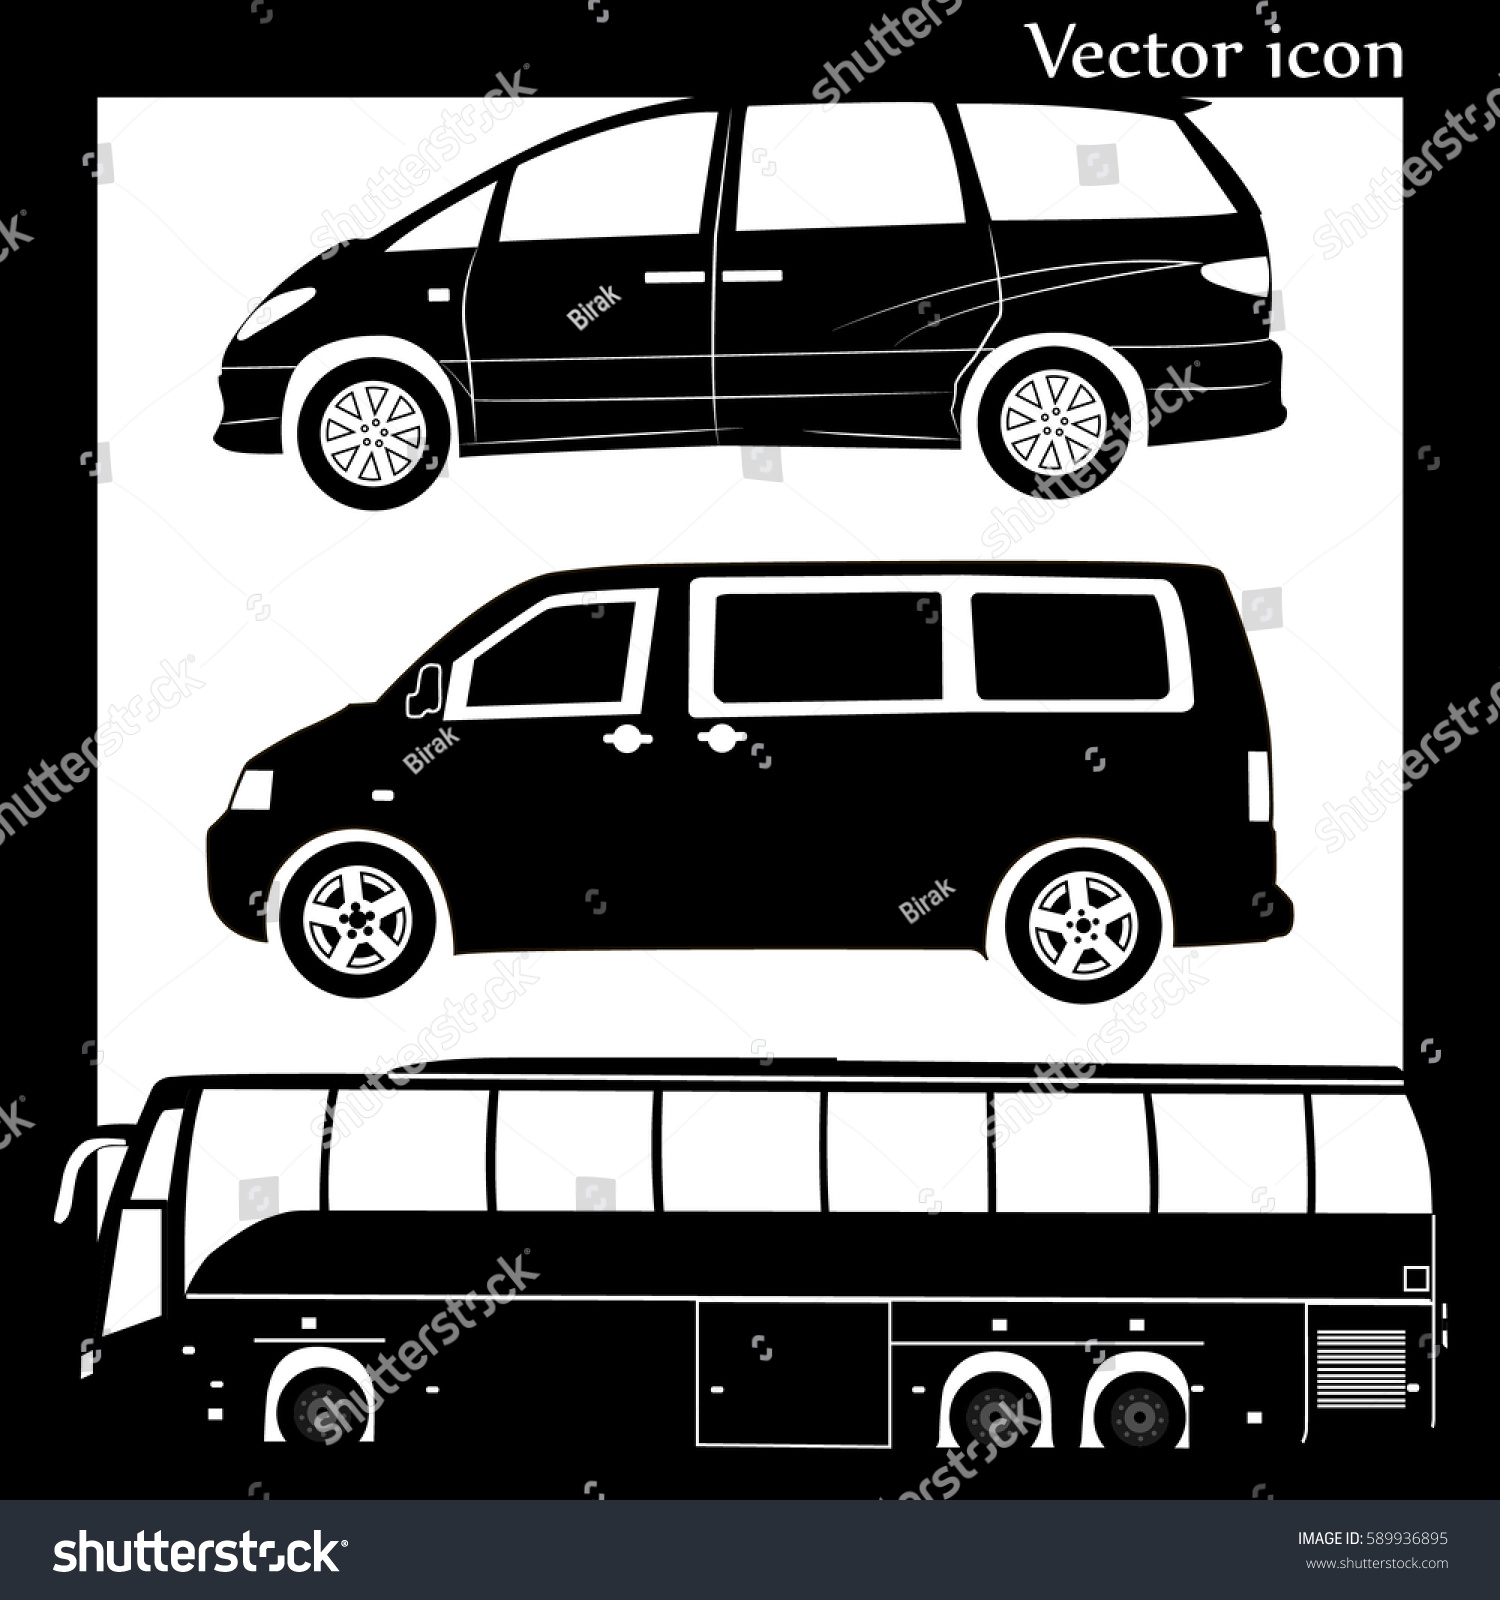 vans and minivans